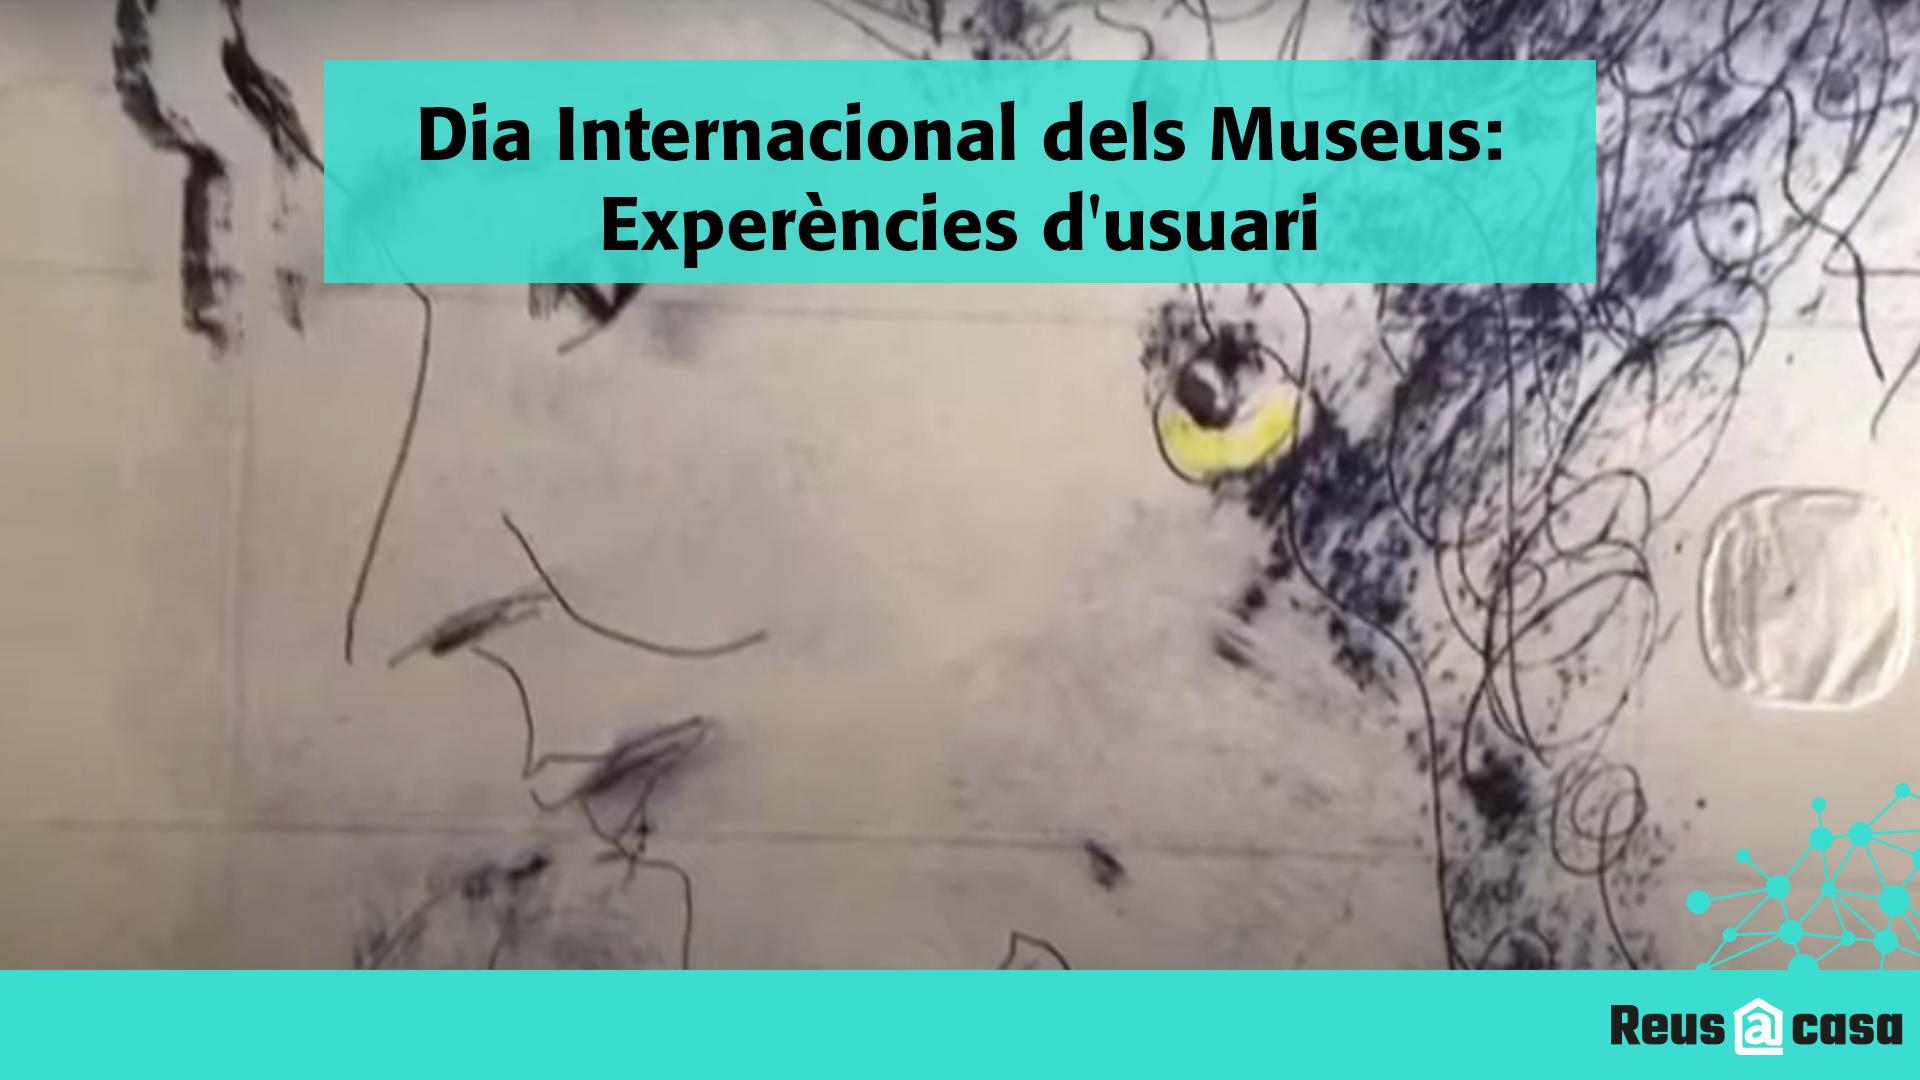 Dia Internacional dels Museus: Experències d'usuari del Museu de Reus 